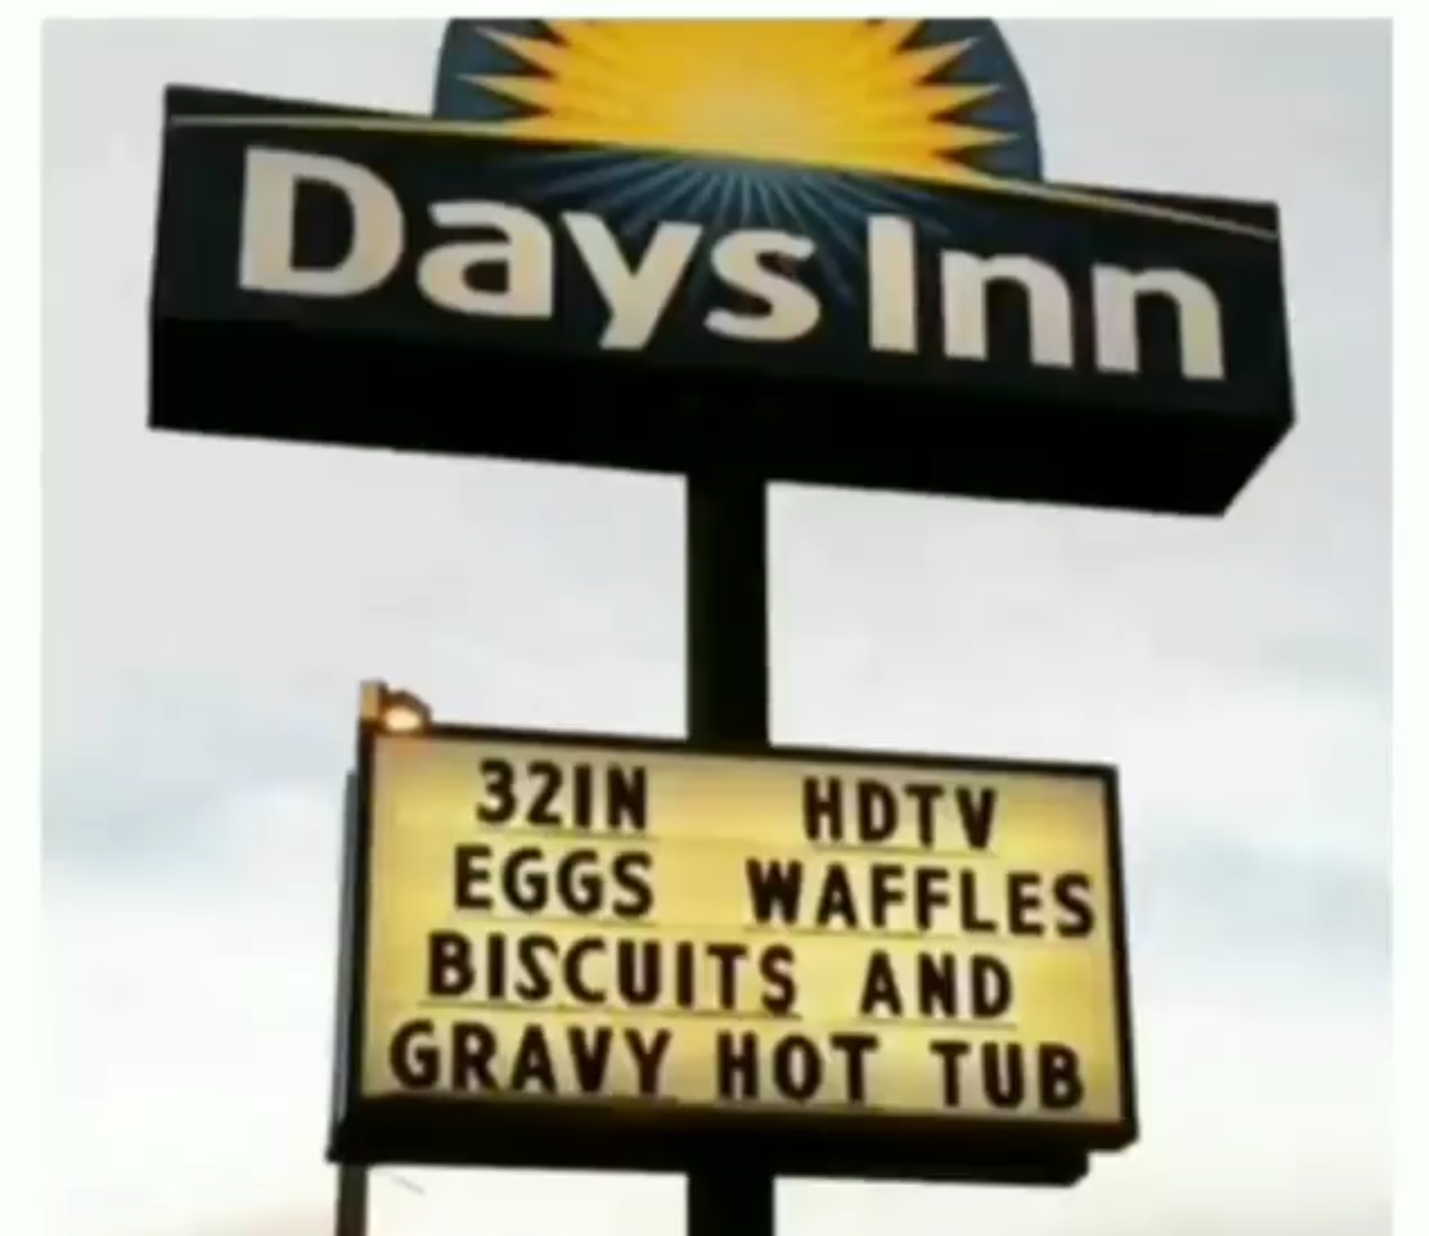 Organon: I want a gravy hot tub!